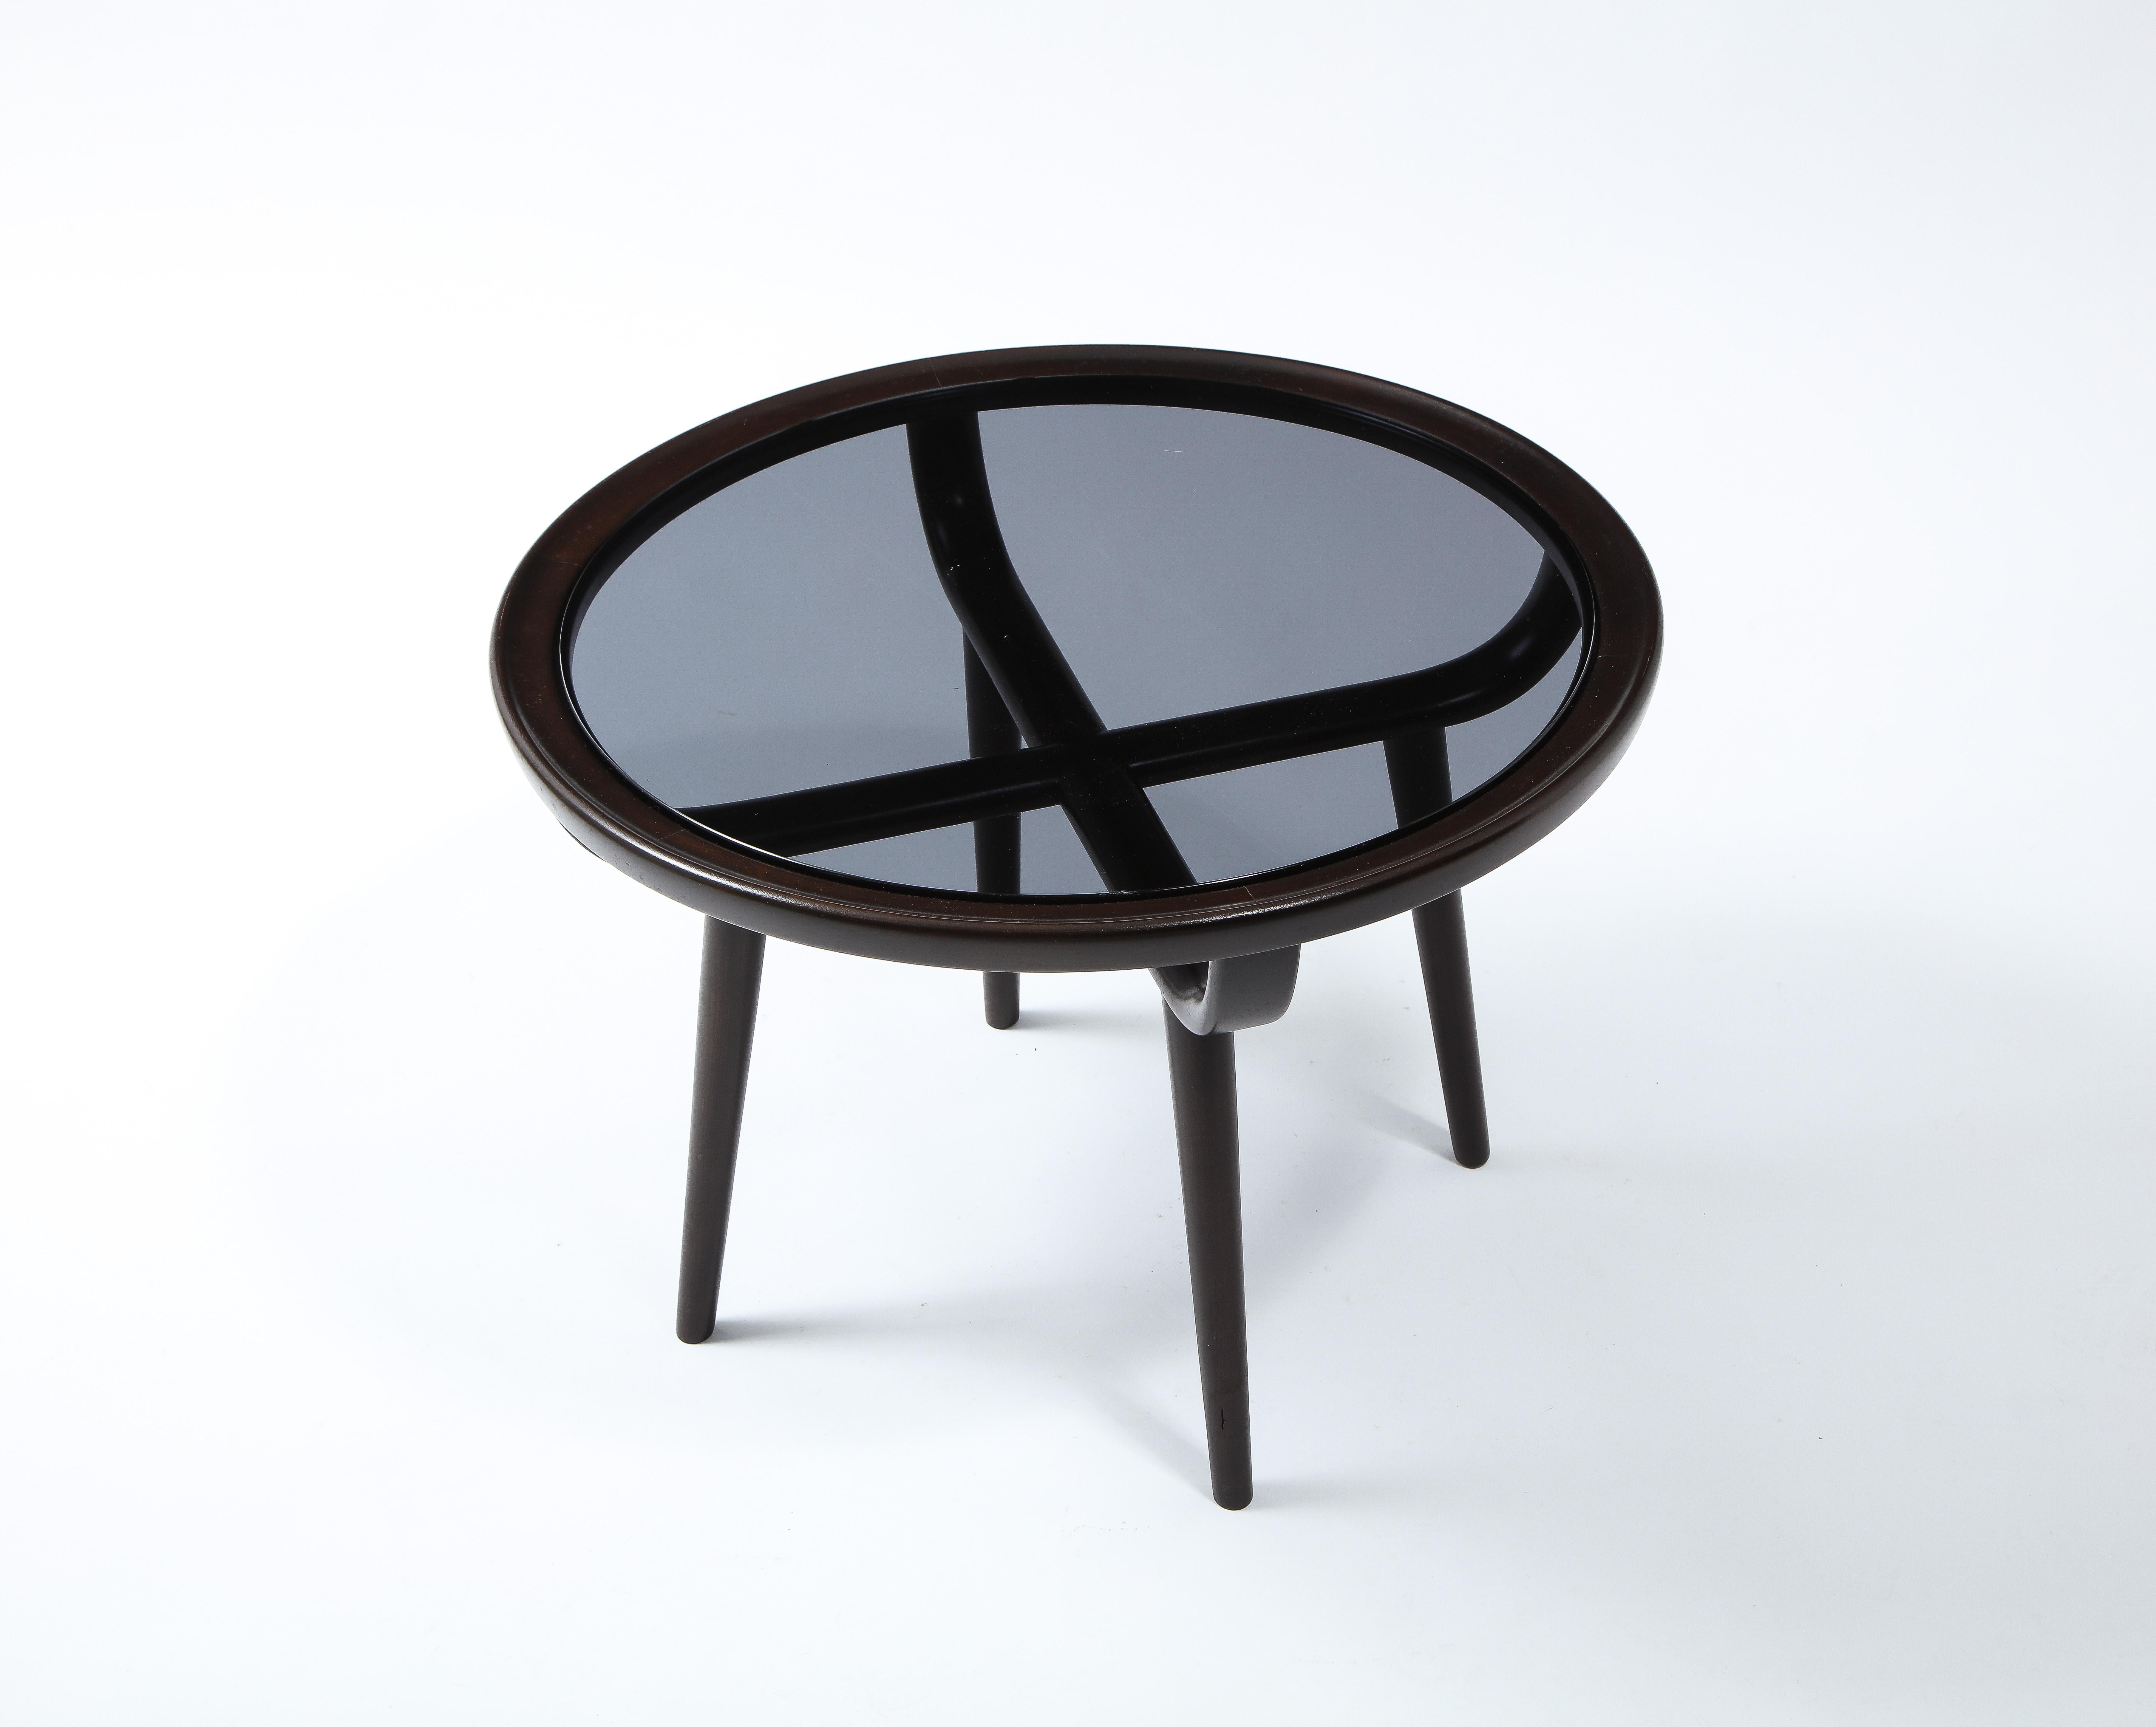 Carlo di Carli Small Dark Walnut & Glass Round Coffee Table, Italy 1960's For Sale 1